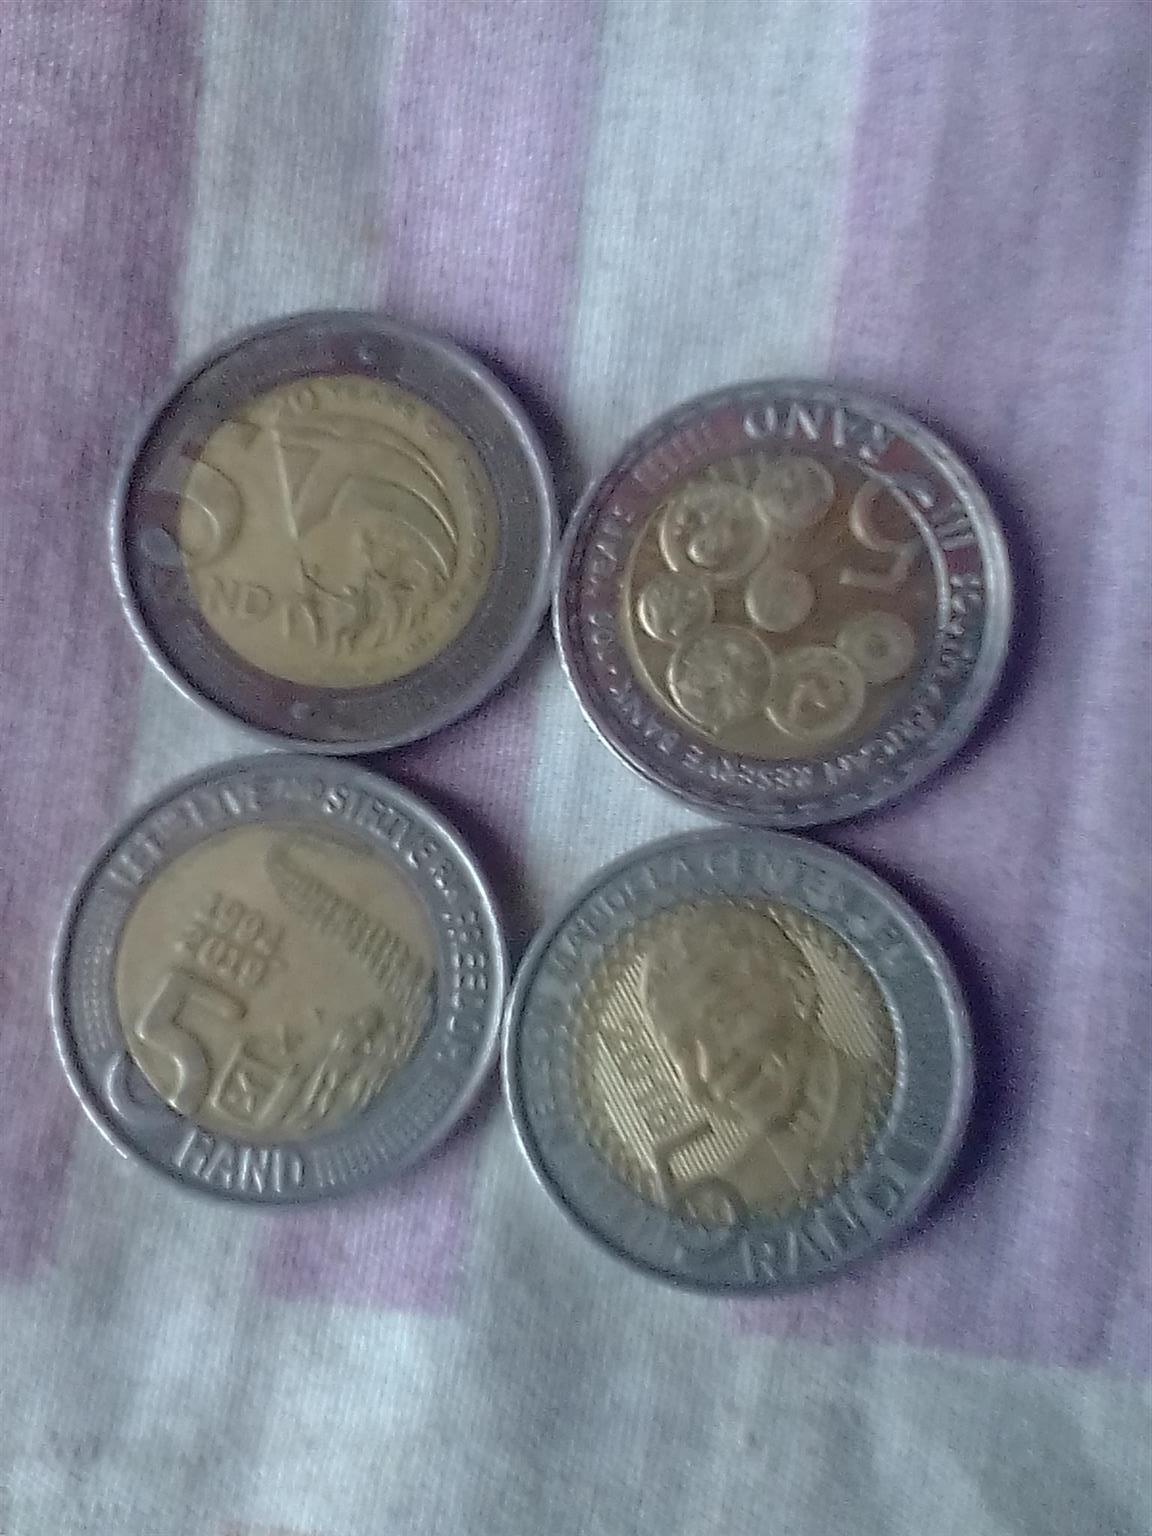 Mandela's coins